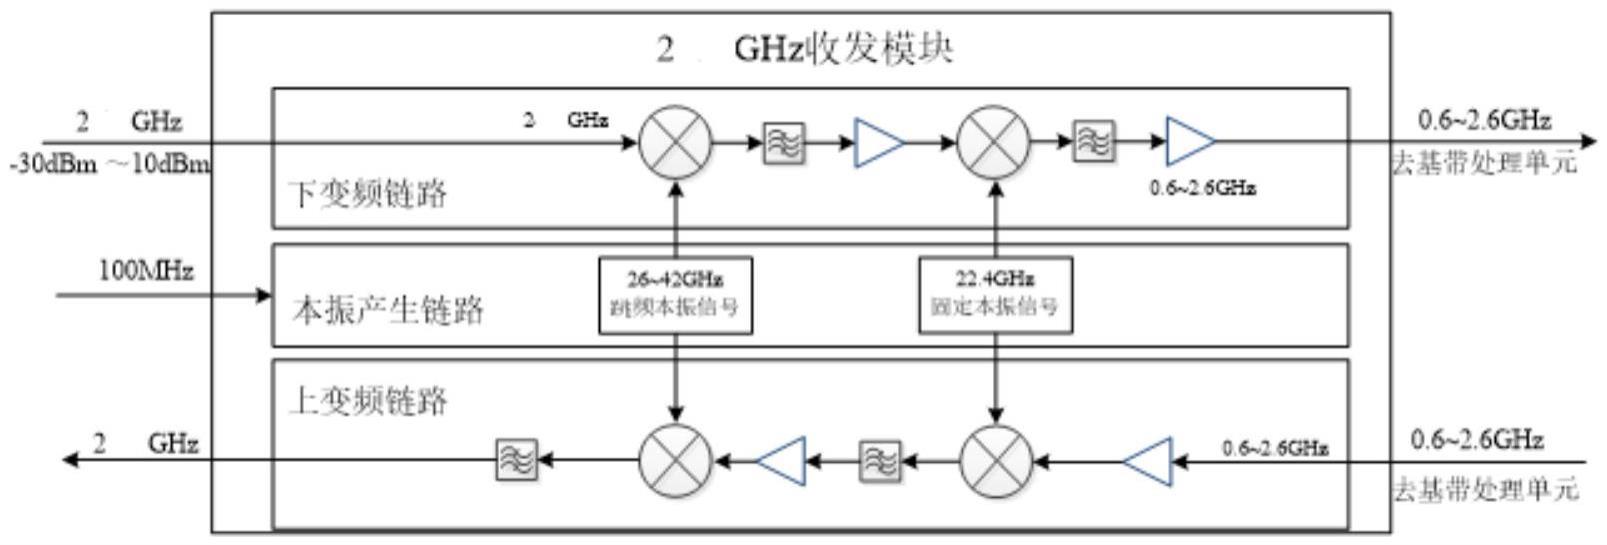 一种2GHz瞬时带宽微波链路的制作方法